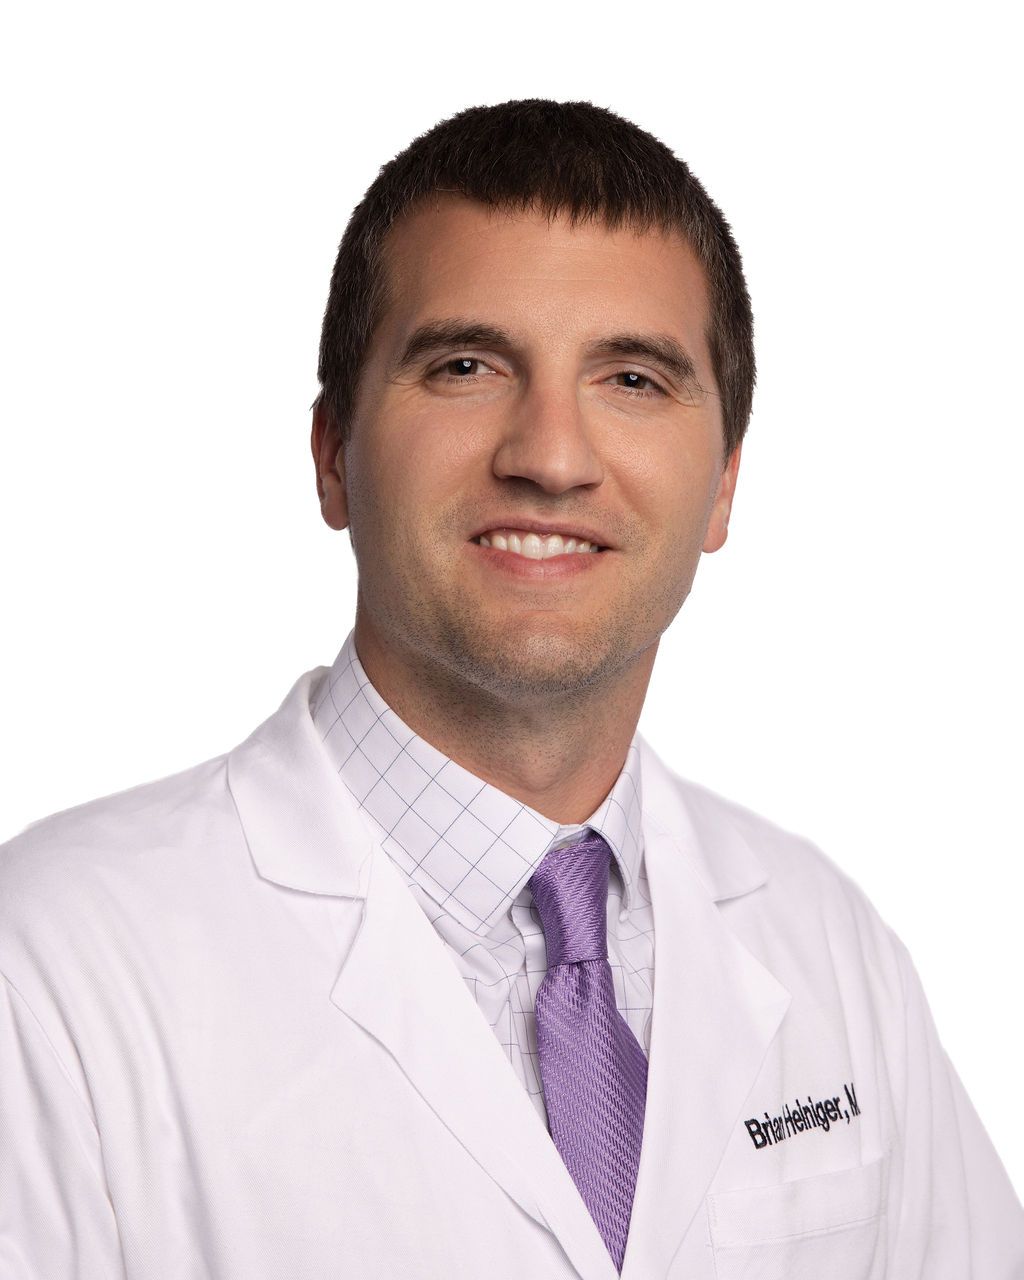 Dr. Brian Heiniger